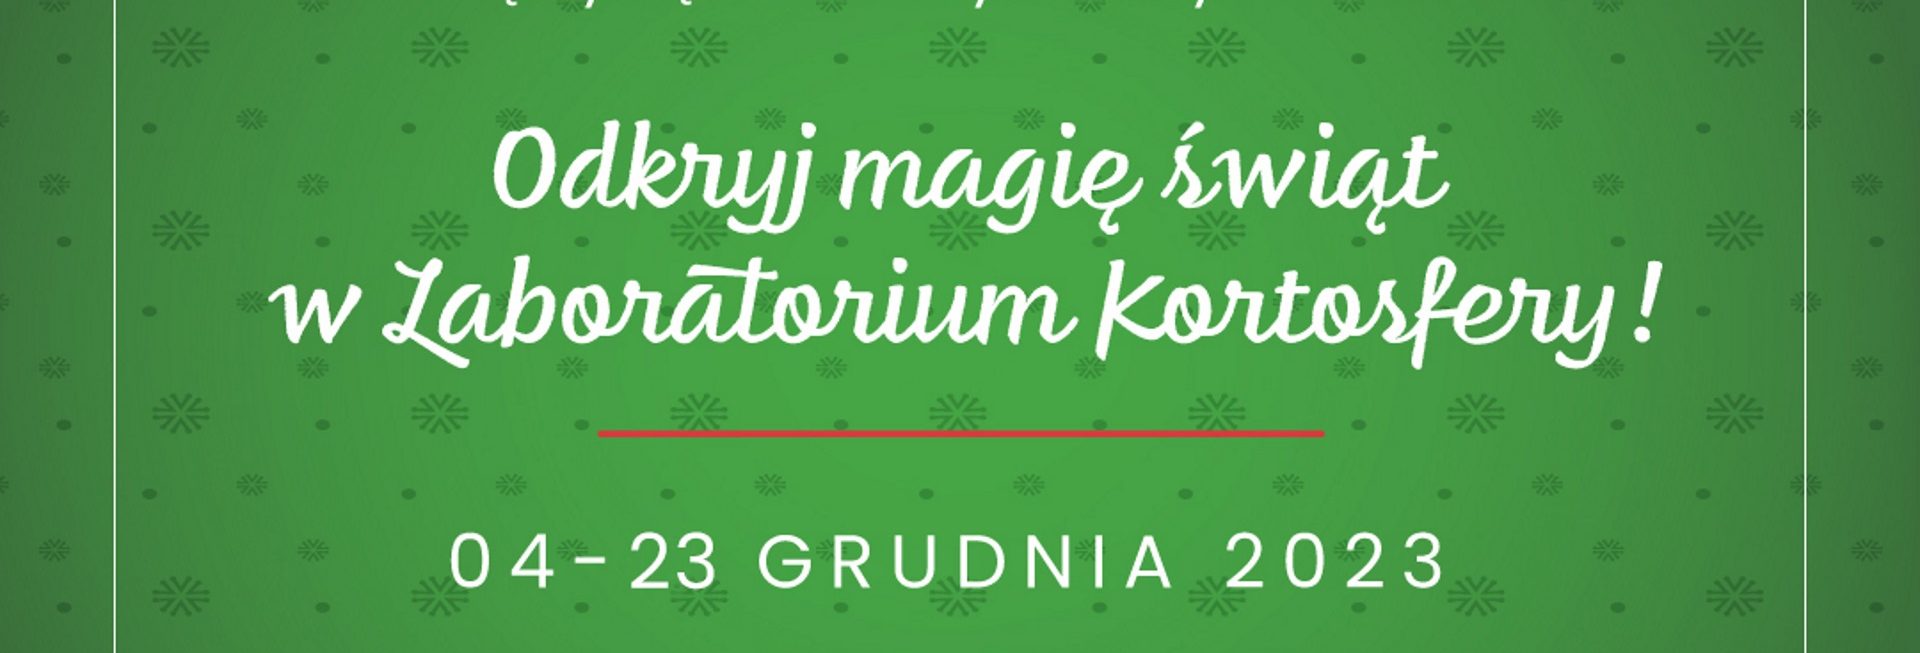 Plakat zapraszający w dniach 4-23 grudnia 2023 r. do Olsztyna na cykl spotkań odkryj magię świąt w Laboratorium Kortosfery "„ŚWIĄTECZNE LABORATORIA” Uniwersytet Olsztyn 2023.